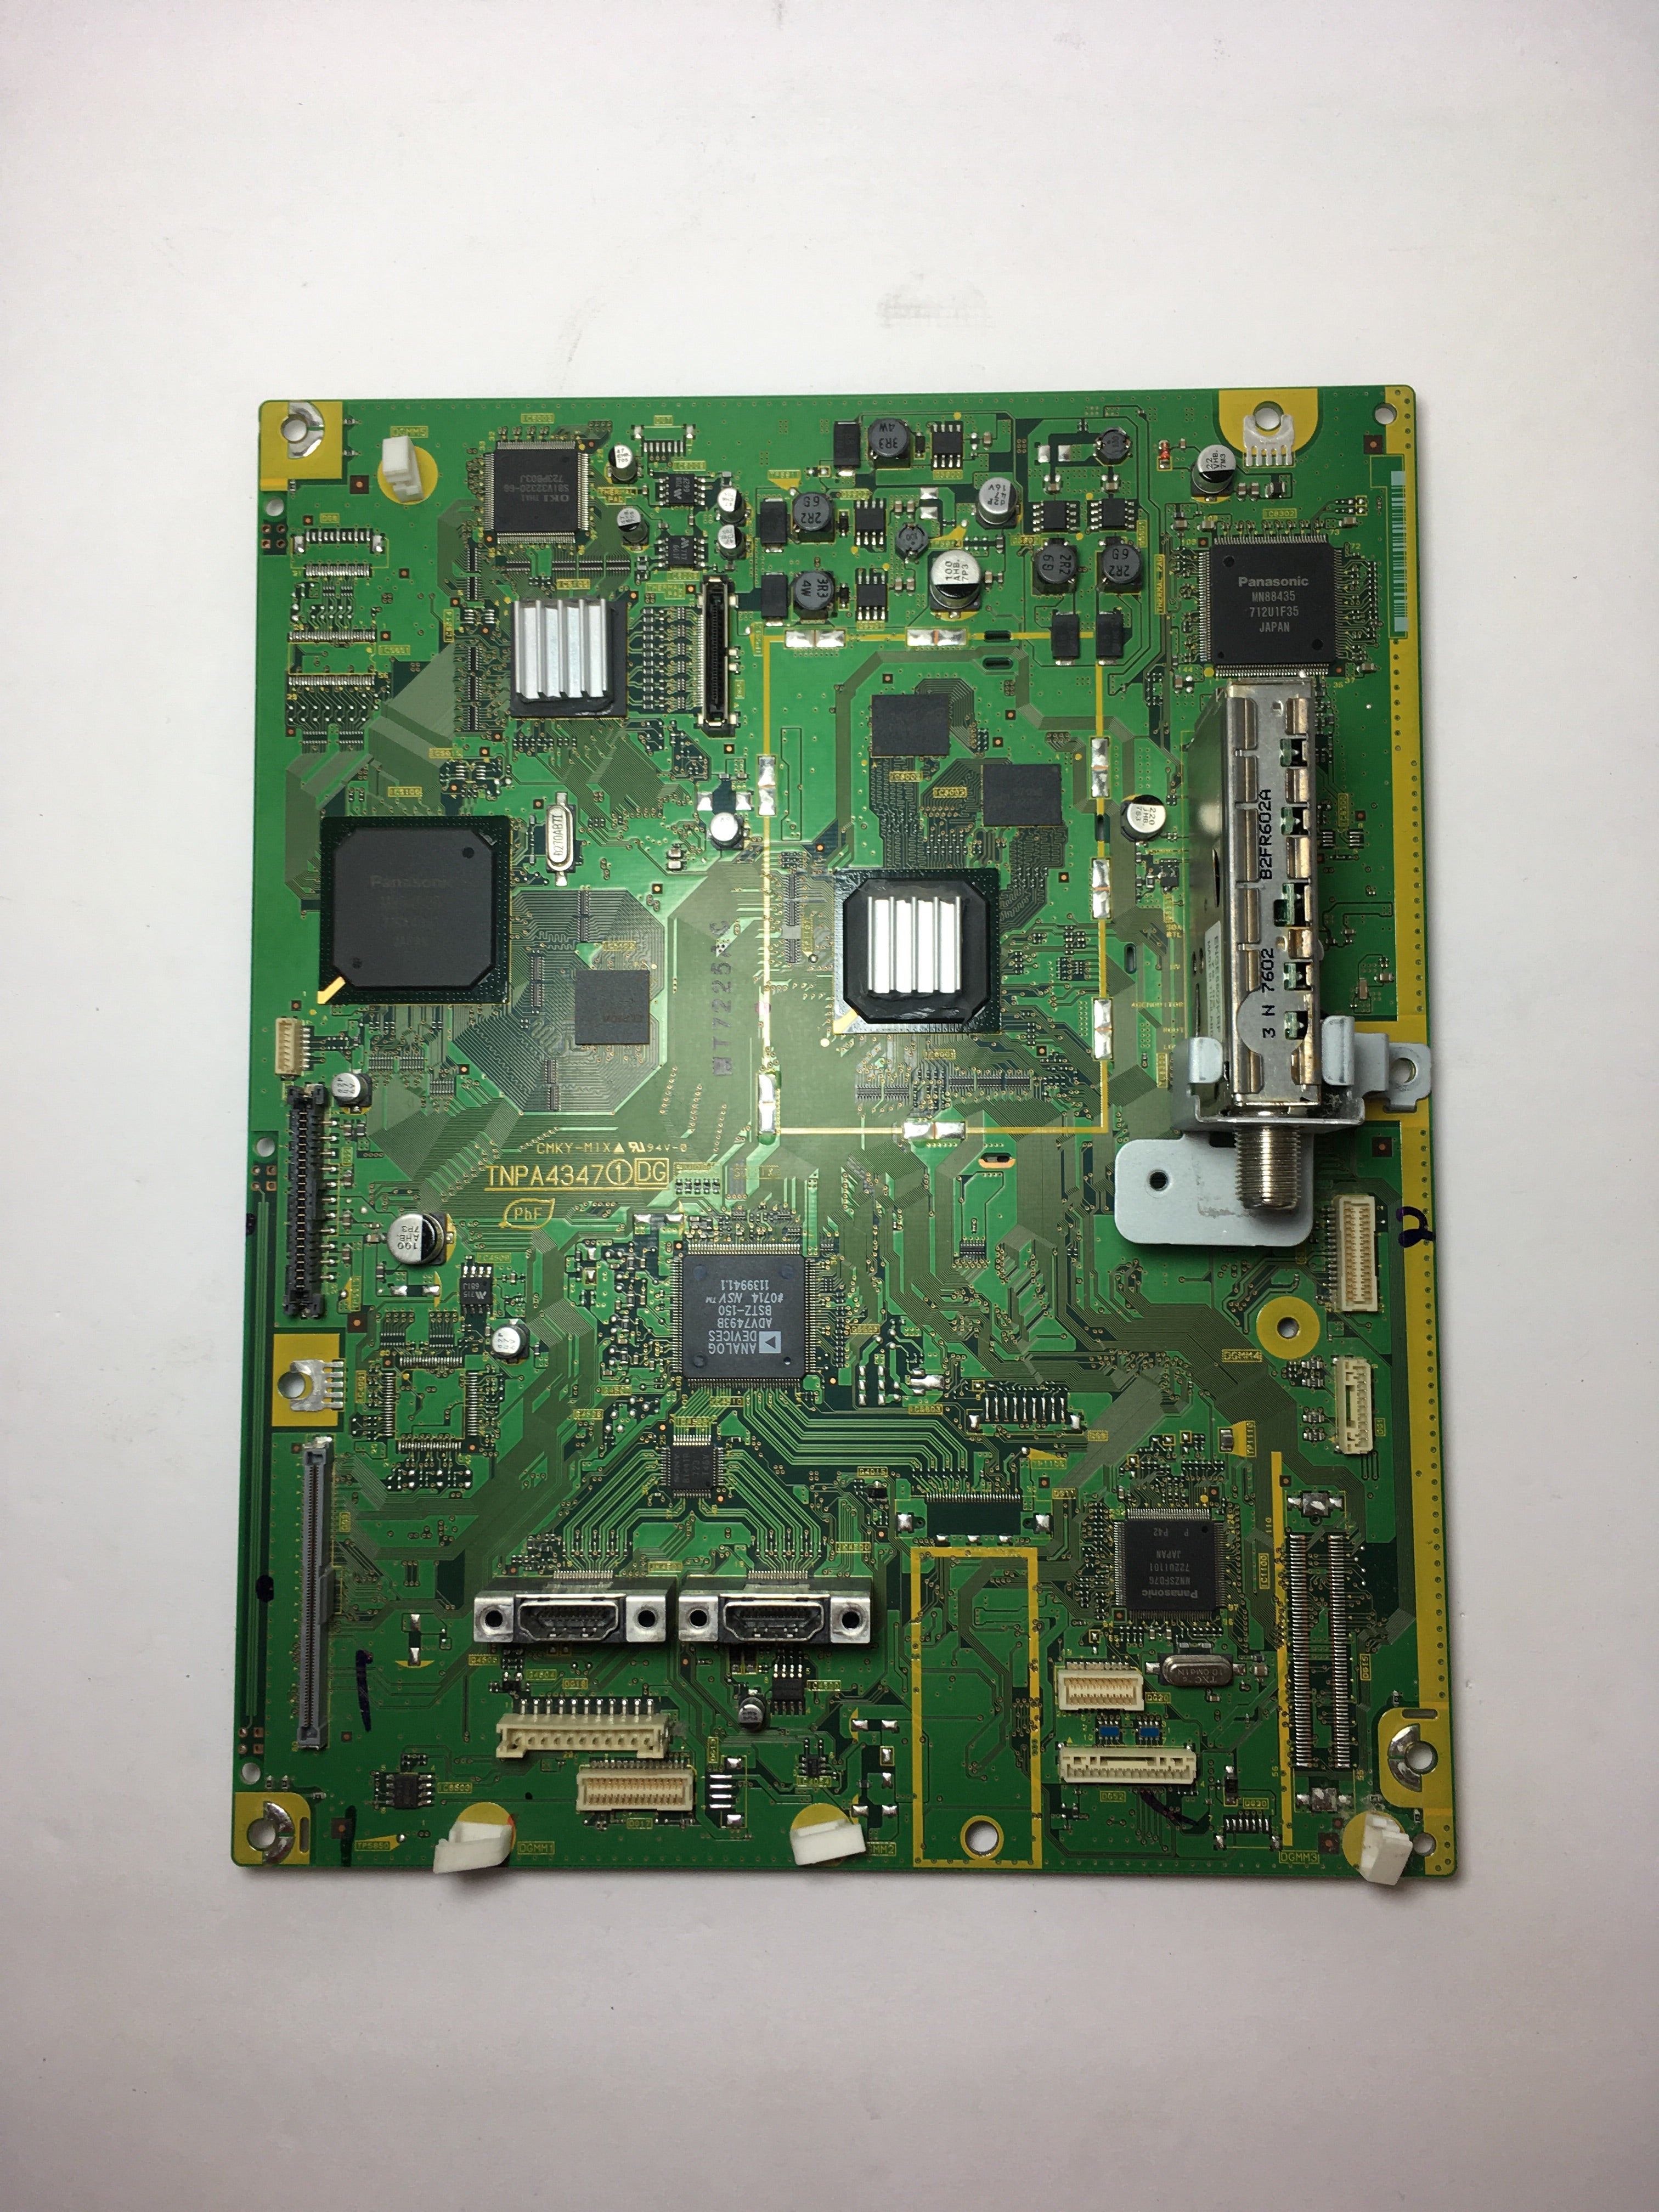 Panasonic TNPA4347ACS (TNPA4347) DG Board